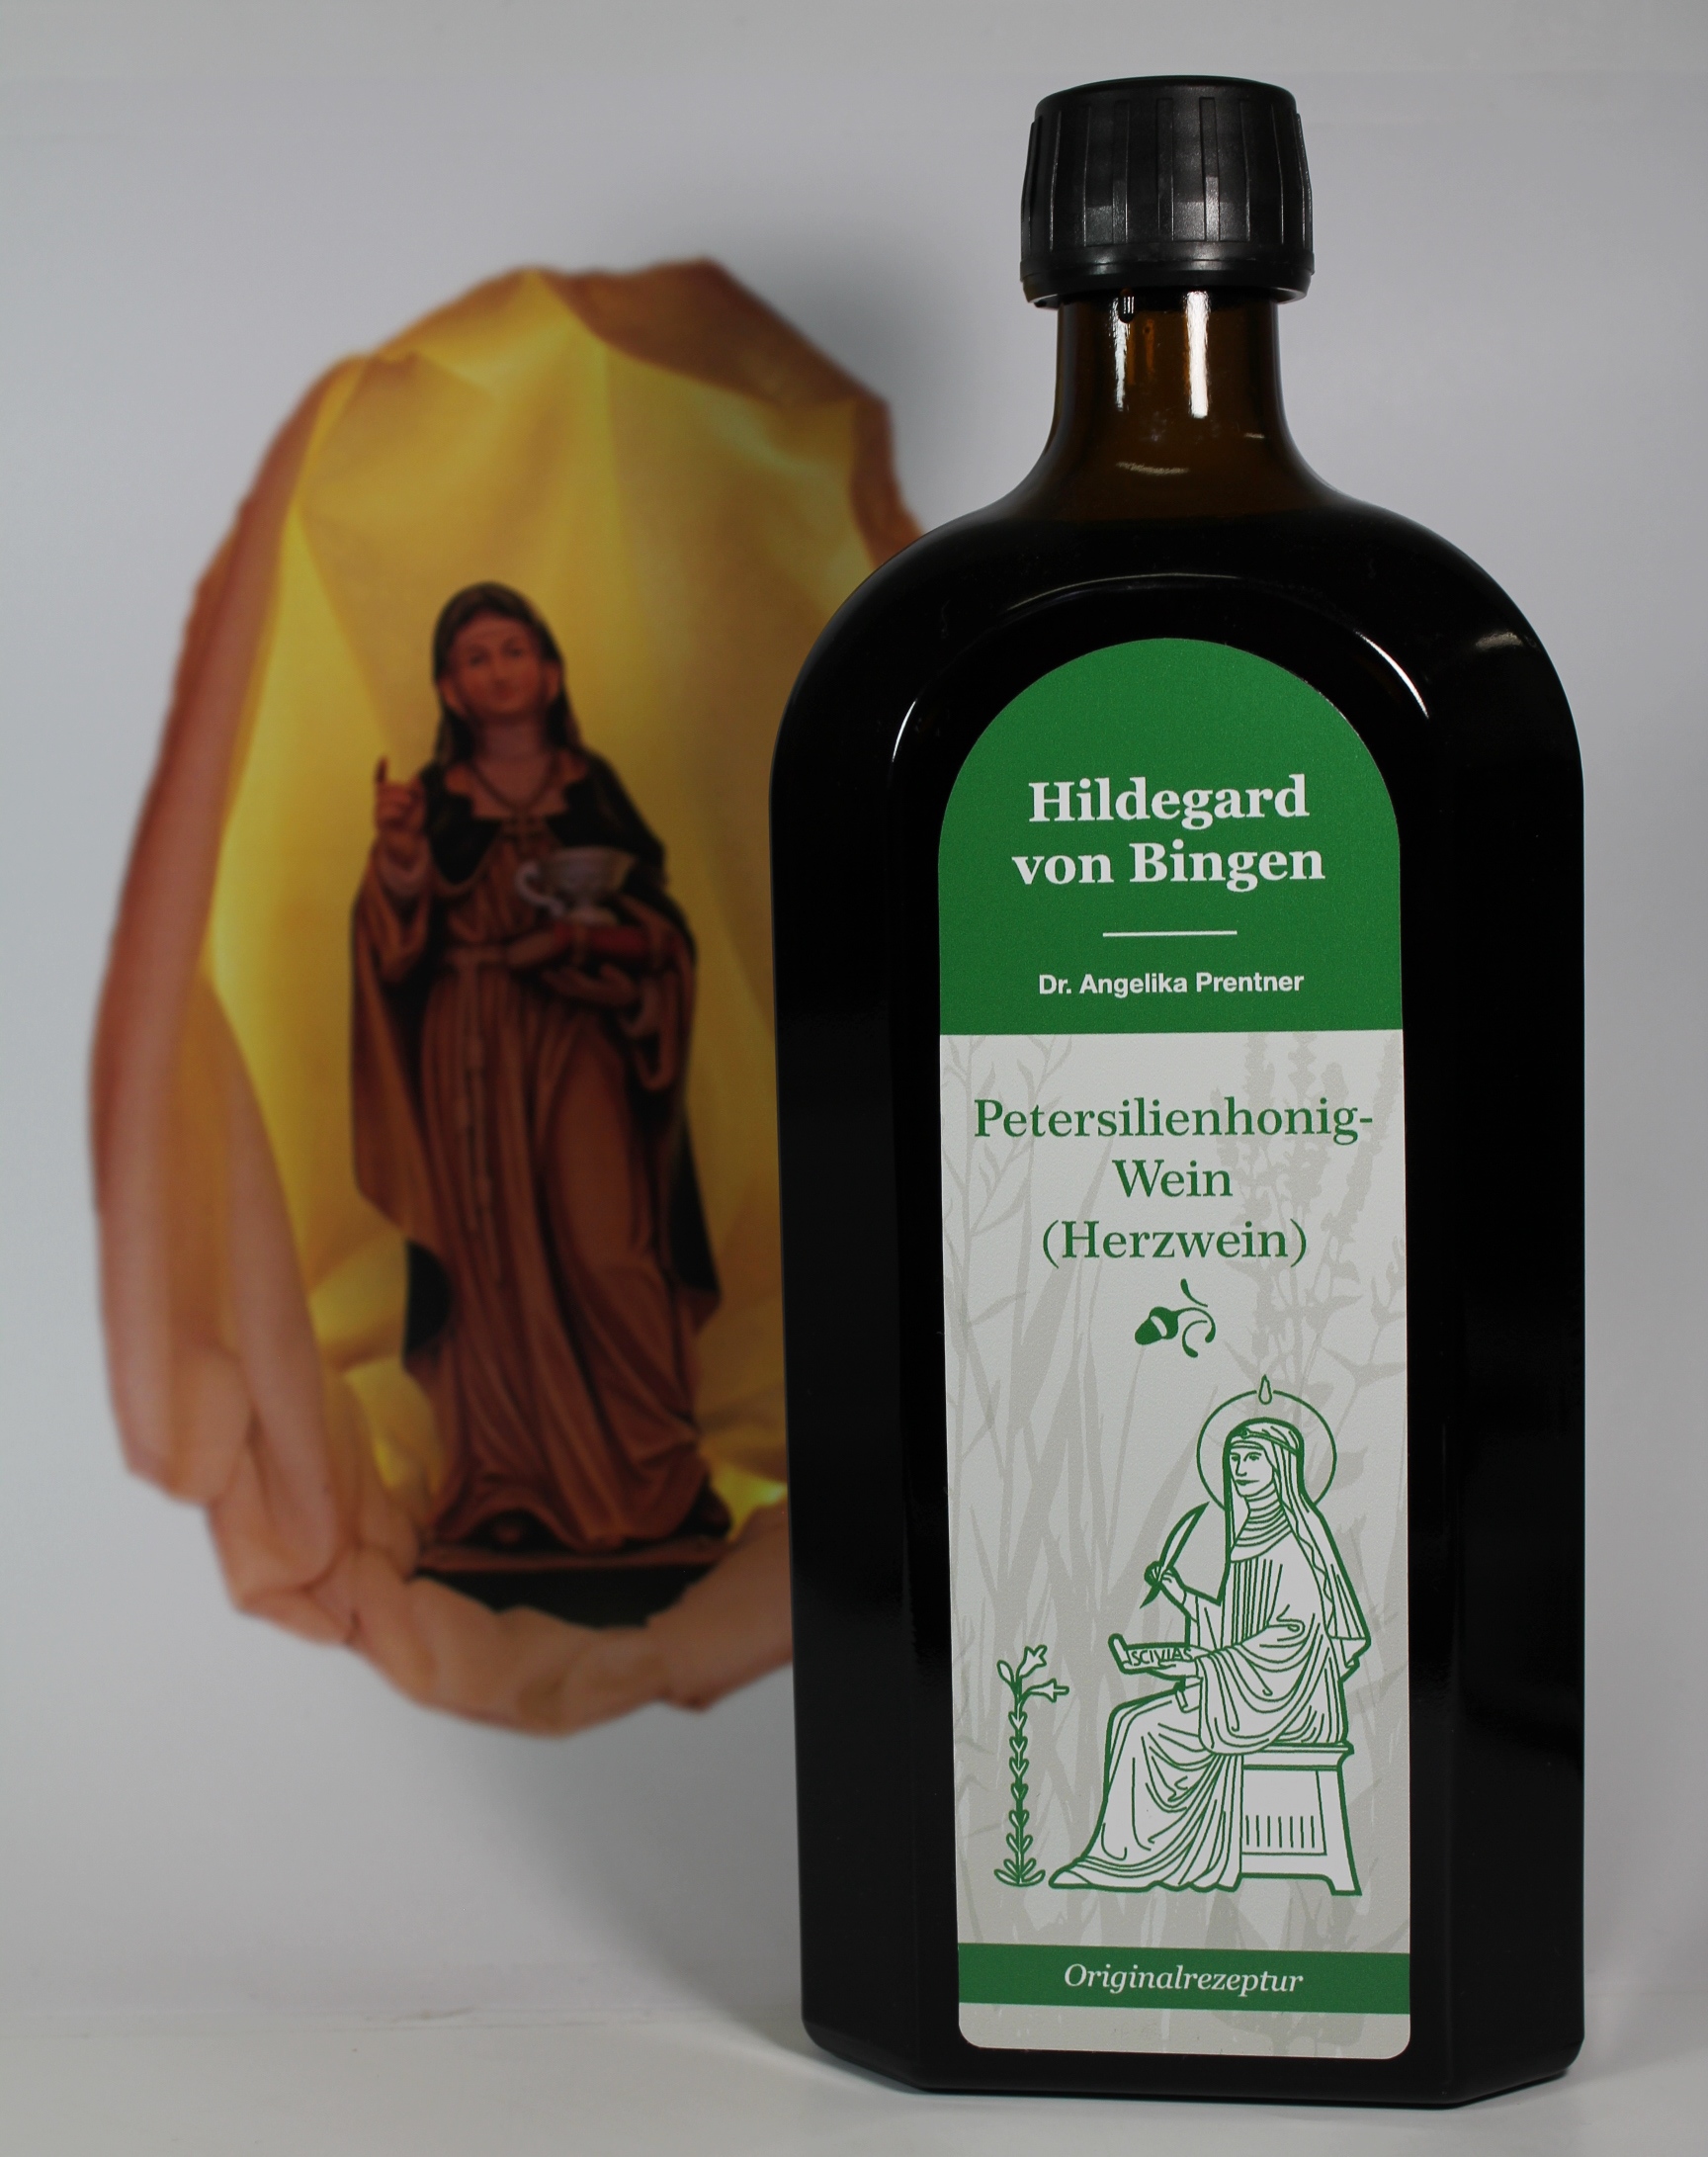 Hildegard v. Bingen Petersilienhonig-Wein (Herzwein), Dr.Prentner ...